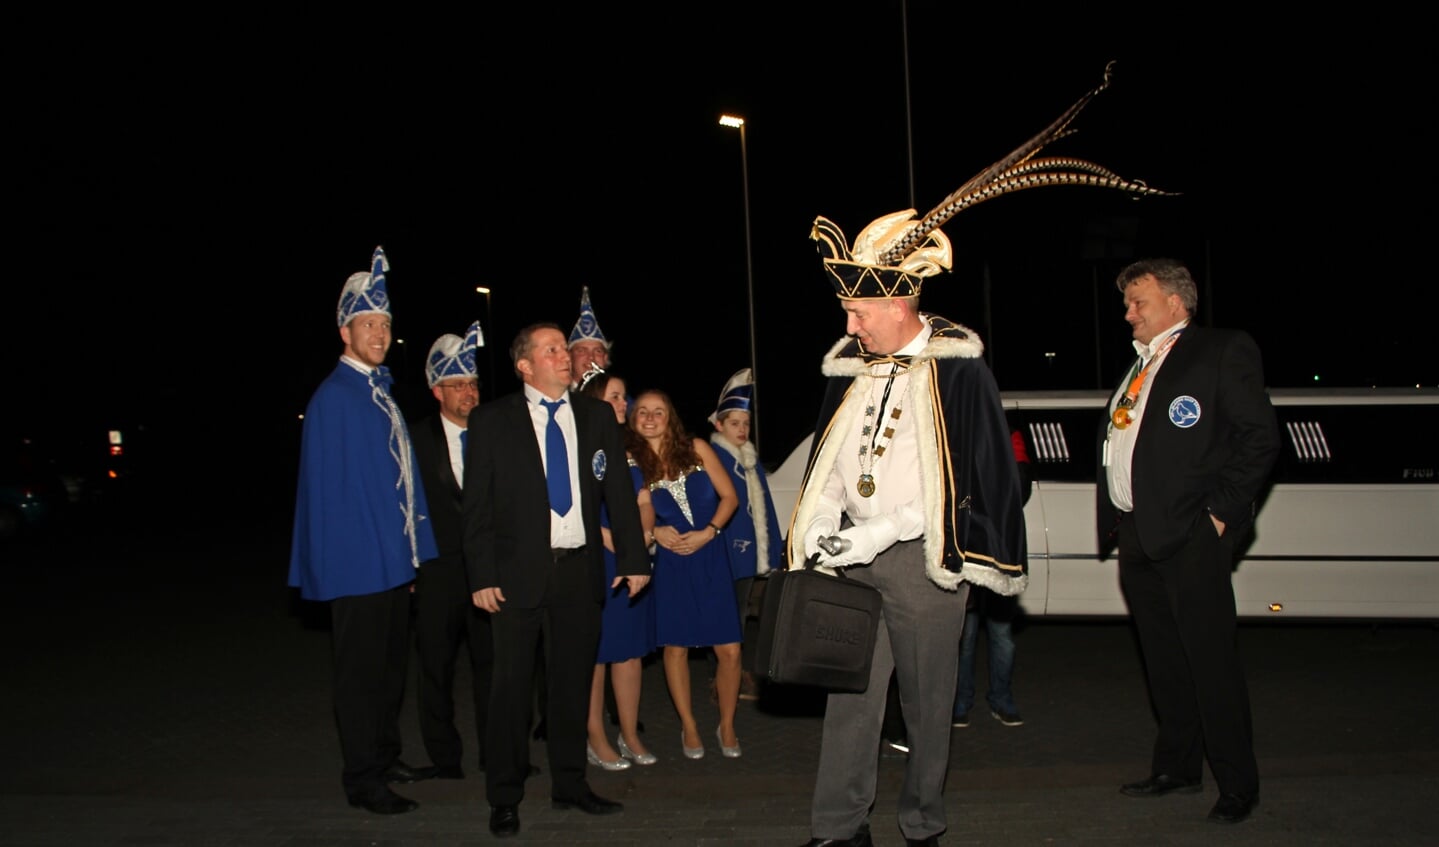 Hofhouding carnavalsvereniging De Blauwe Snep naar het gemeentehuis voor de sleuteloverdracht. Foto: Liesbeth Spaansen